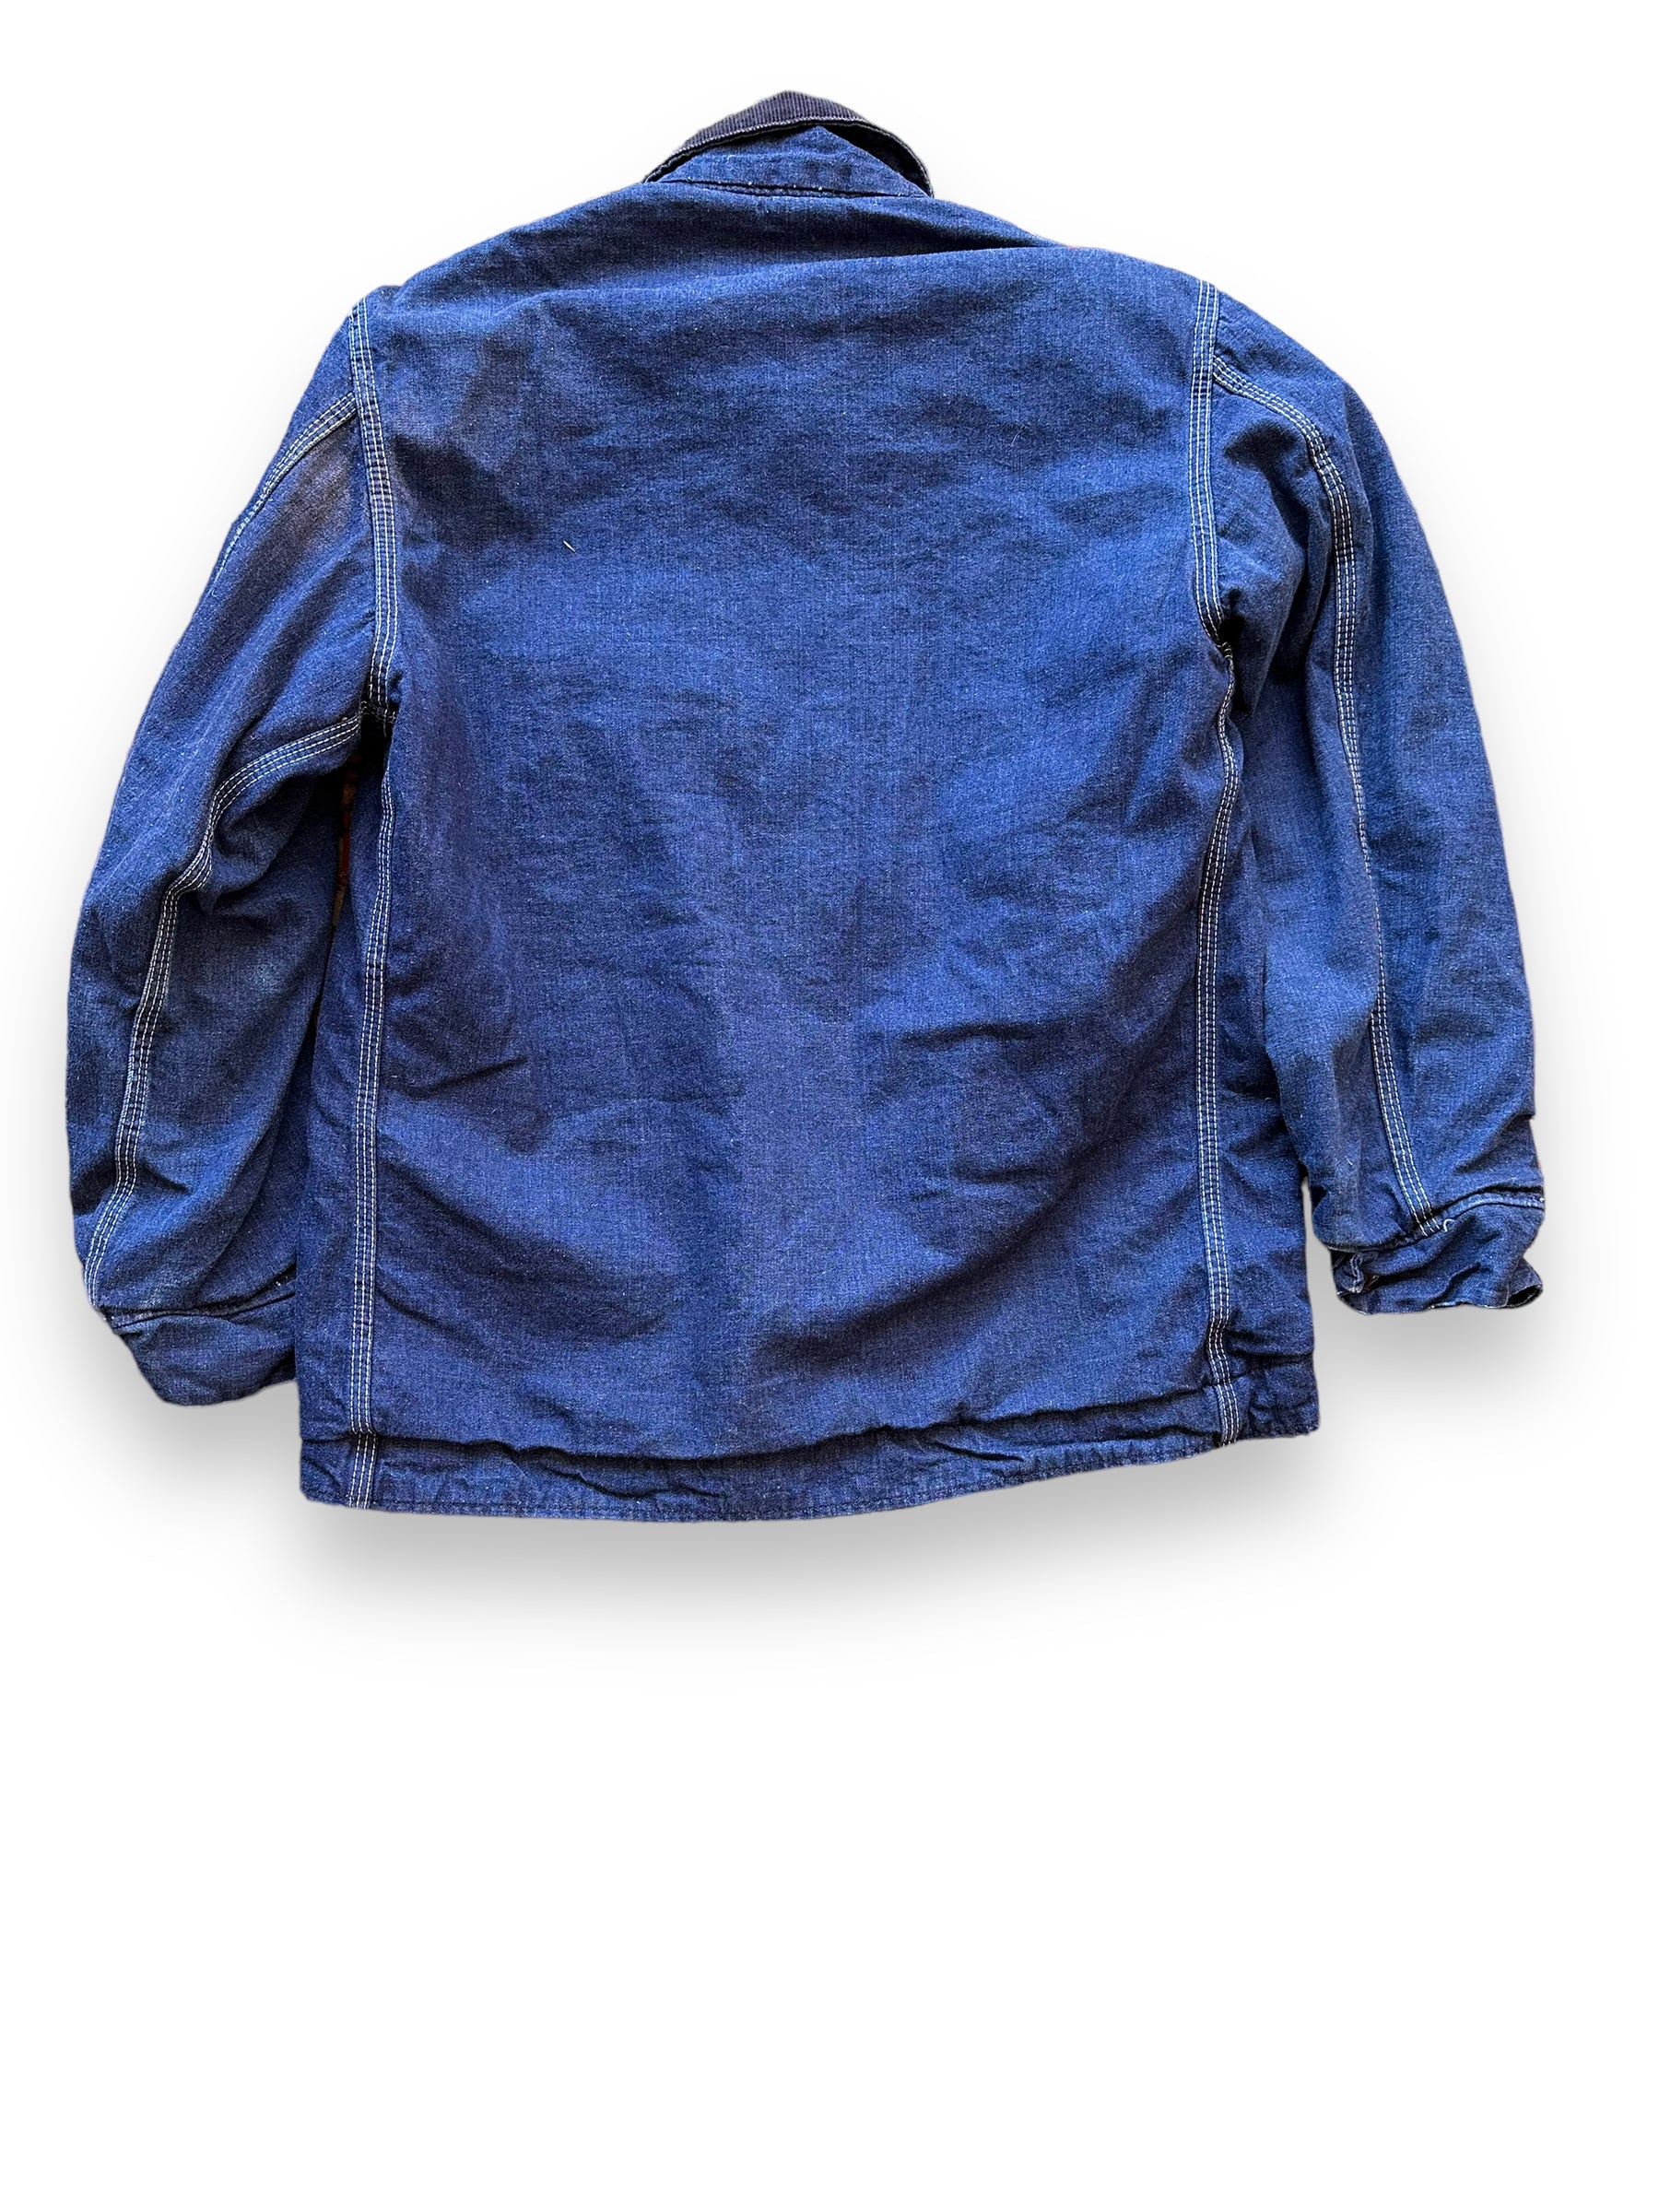 Rear View of Vintage Sears Blanket Lined Denim Chore Coat SZ L | Vintage Denim Chore Coat | Barn Owl Vintage Seattle